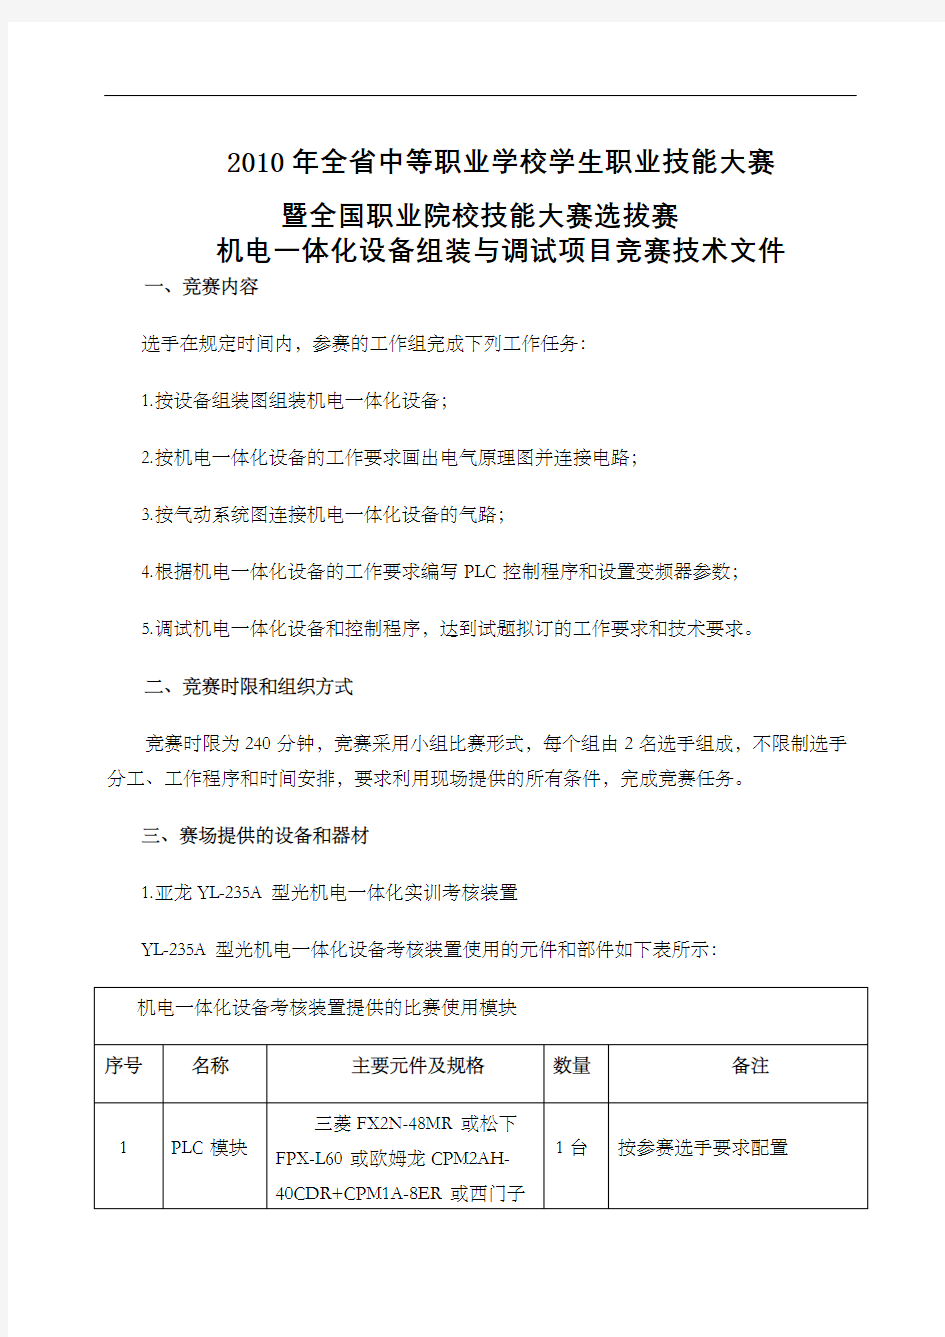 机电一体化设备组装与调试项目竞赛技术文件杭州市中等职业学校定稿版